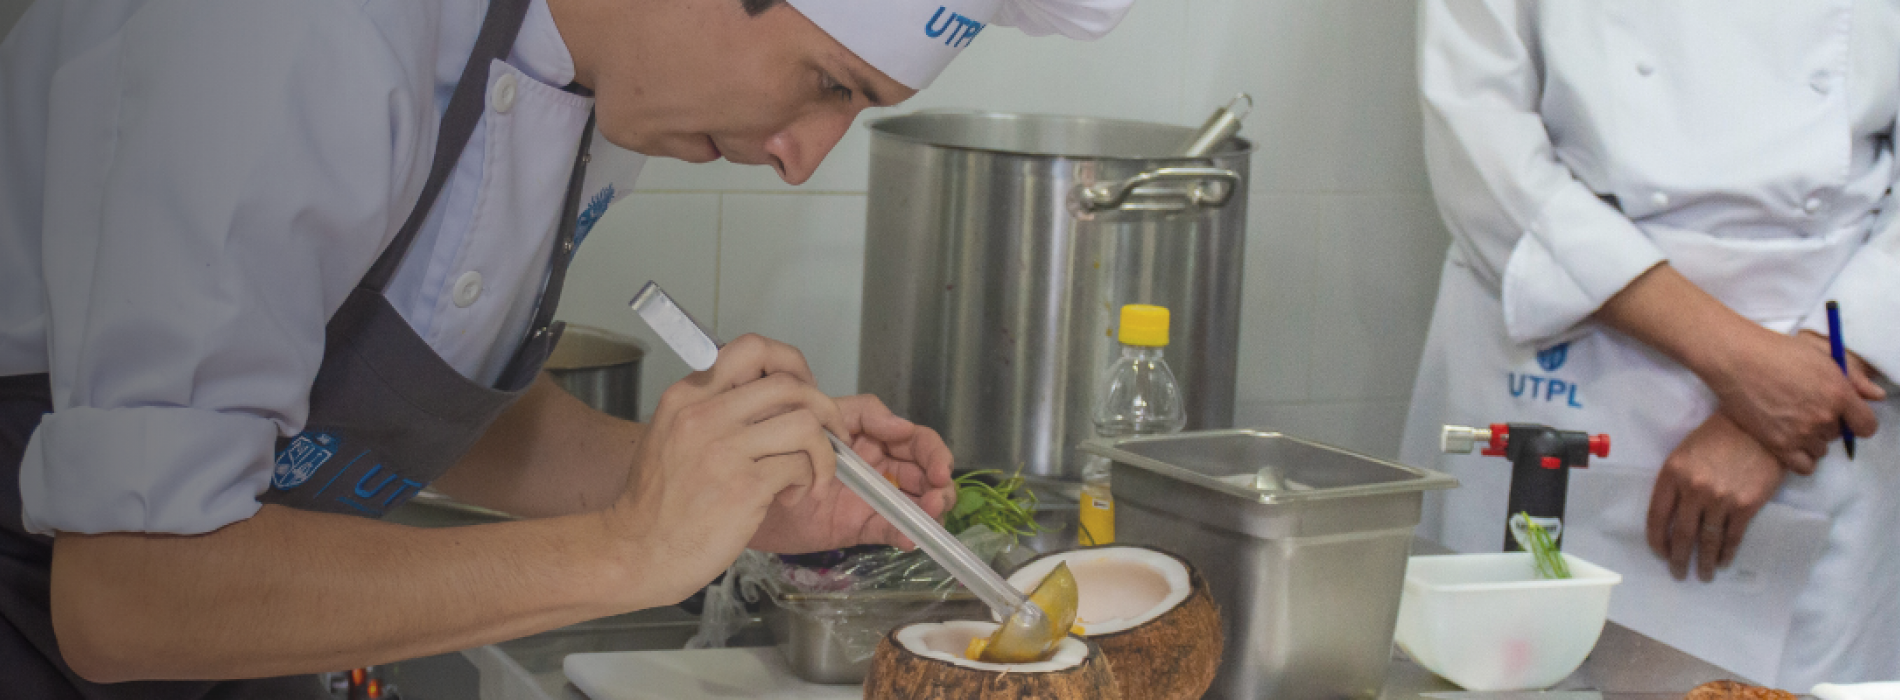 La gastronomía permite compartir la riqueza ecuatoriana con el mundo